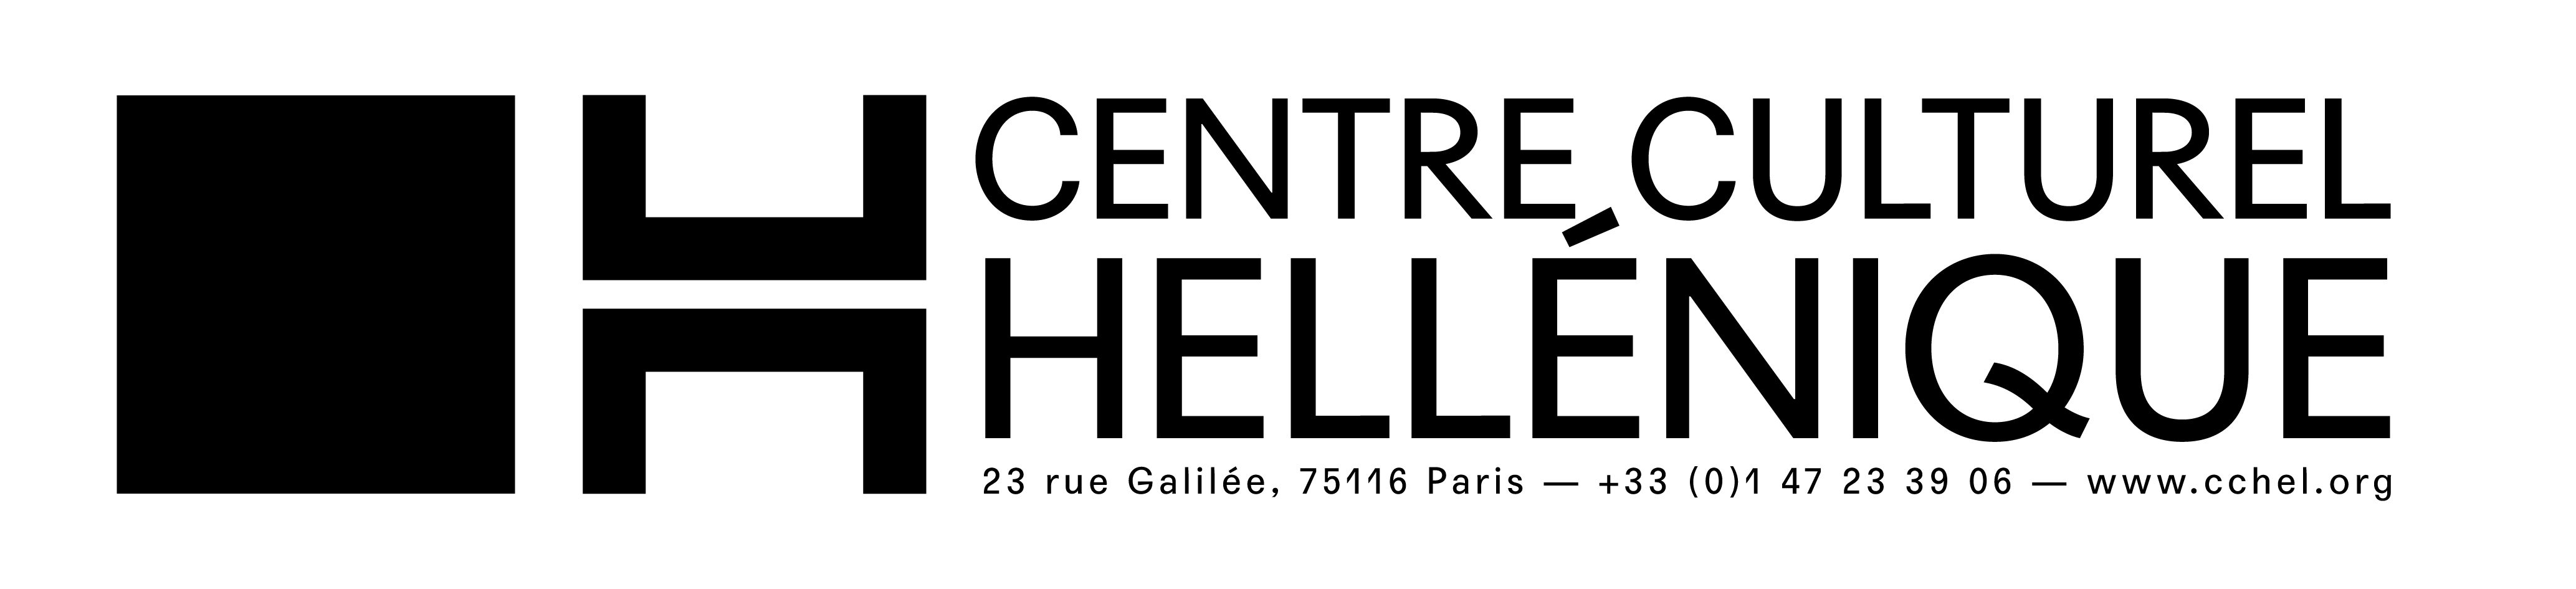 Logo-CCH-V2-01